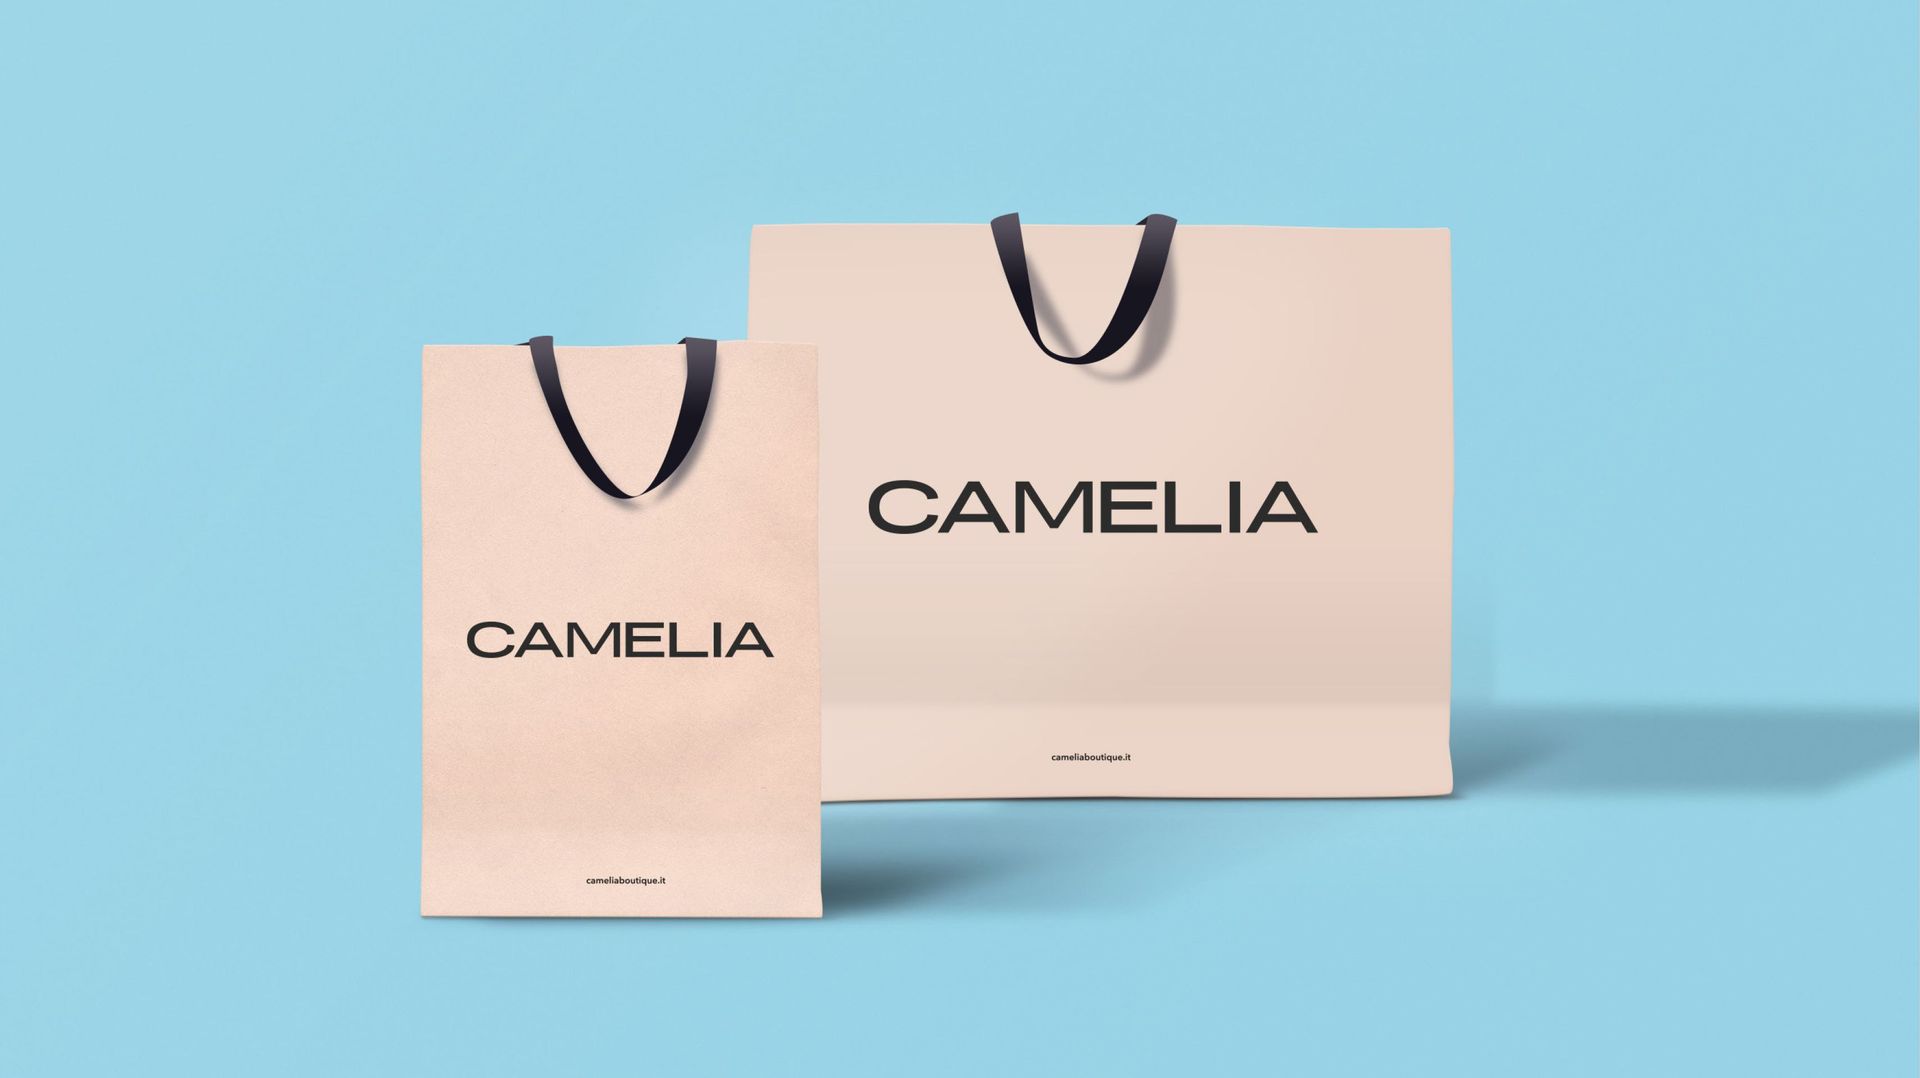 Progetto interior design, ristrutturazione negozio Camelia boutique Elisabetta Franchi Bergamo, Milano, Parigi, Londra, New York. Officina Magisafi architettura design - shopping bag